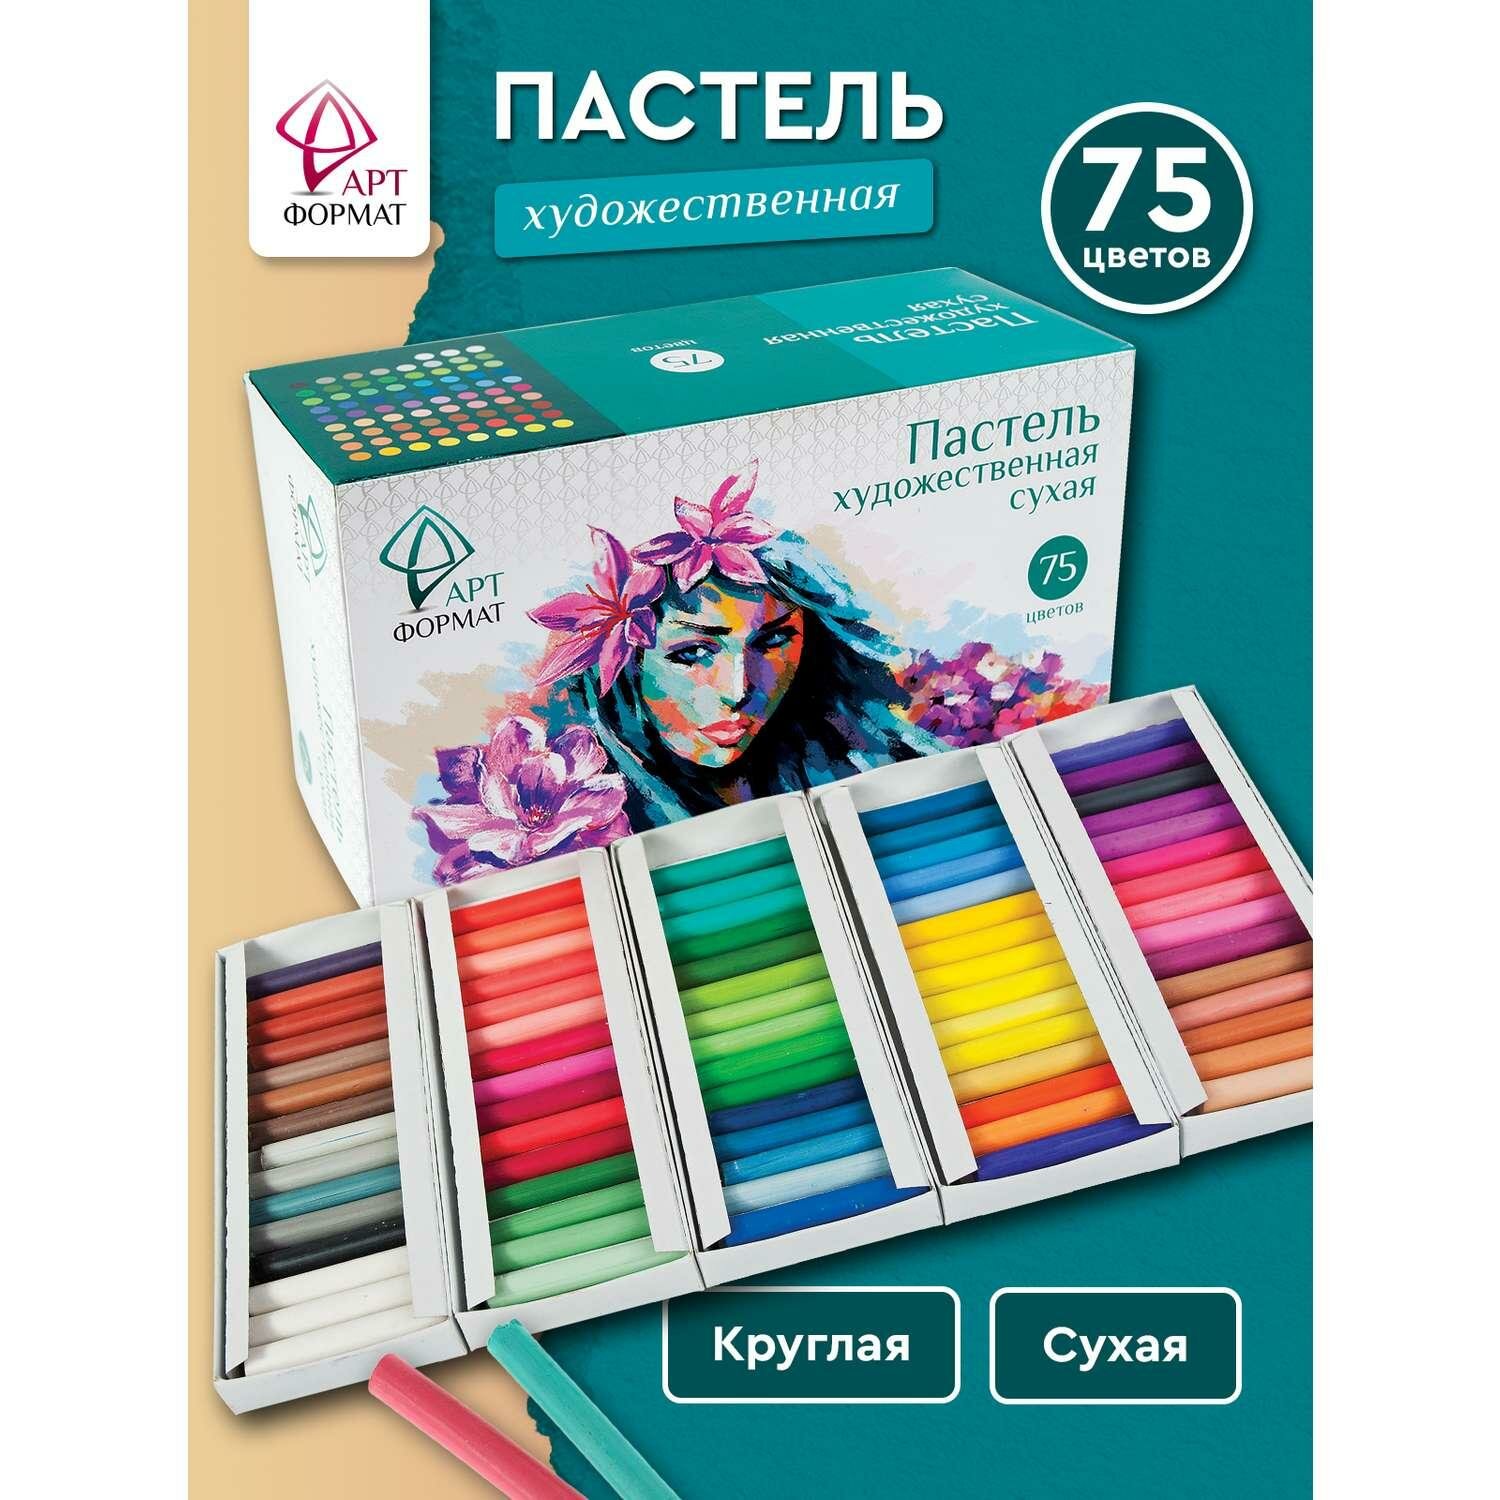 Пастель художественная АРТформат сухая 75 цветов картонная упаковка (AF13-071-05)